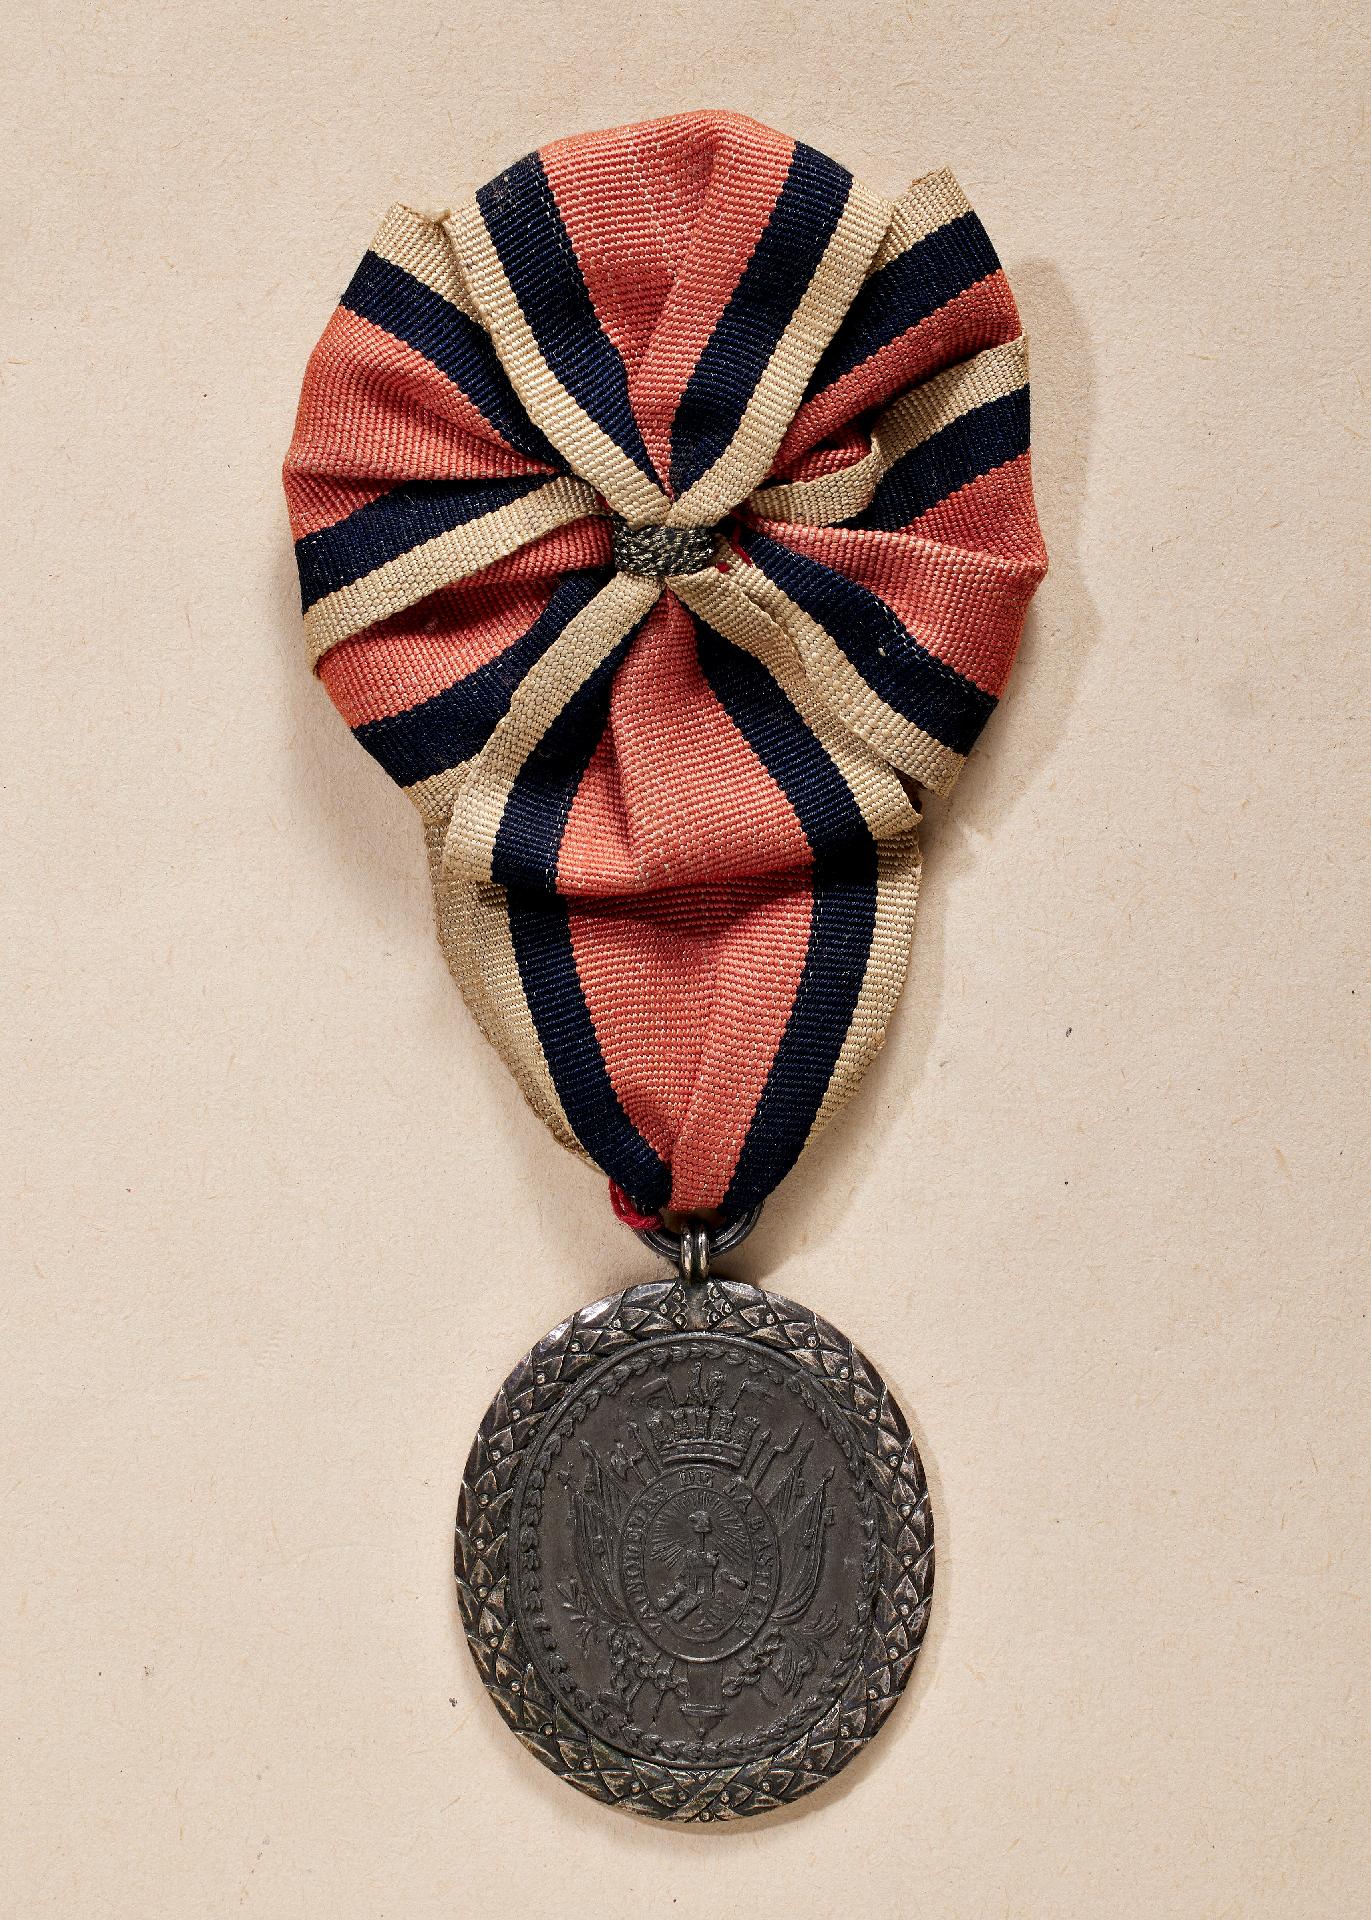 Frankreich : Insignie der Vereinigung der Eroberer der Bastille (Médaille - Insigne de L'Associa...